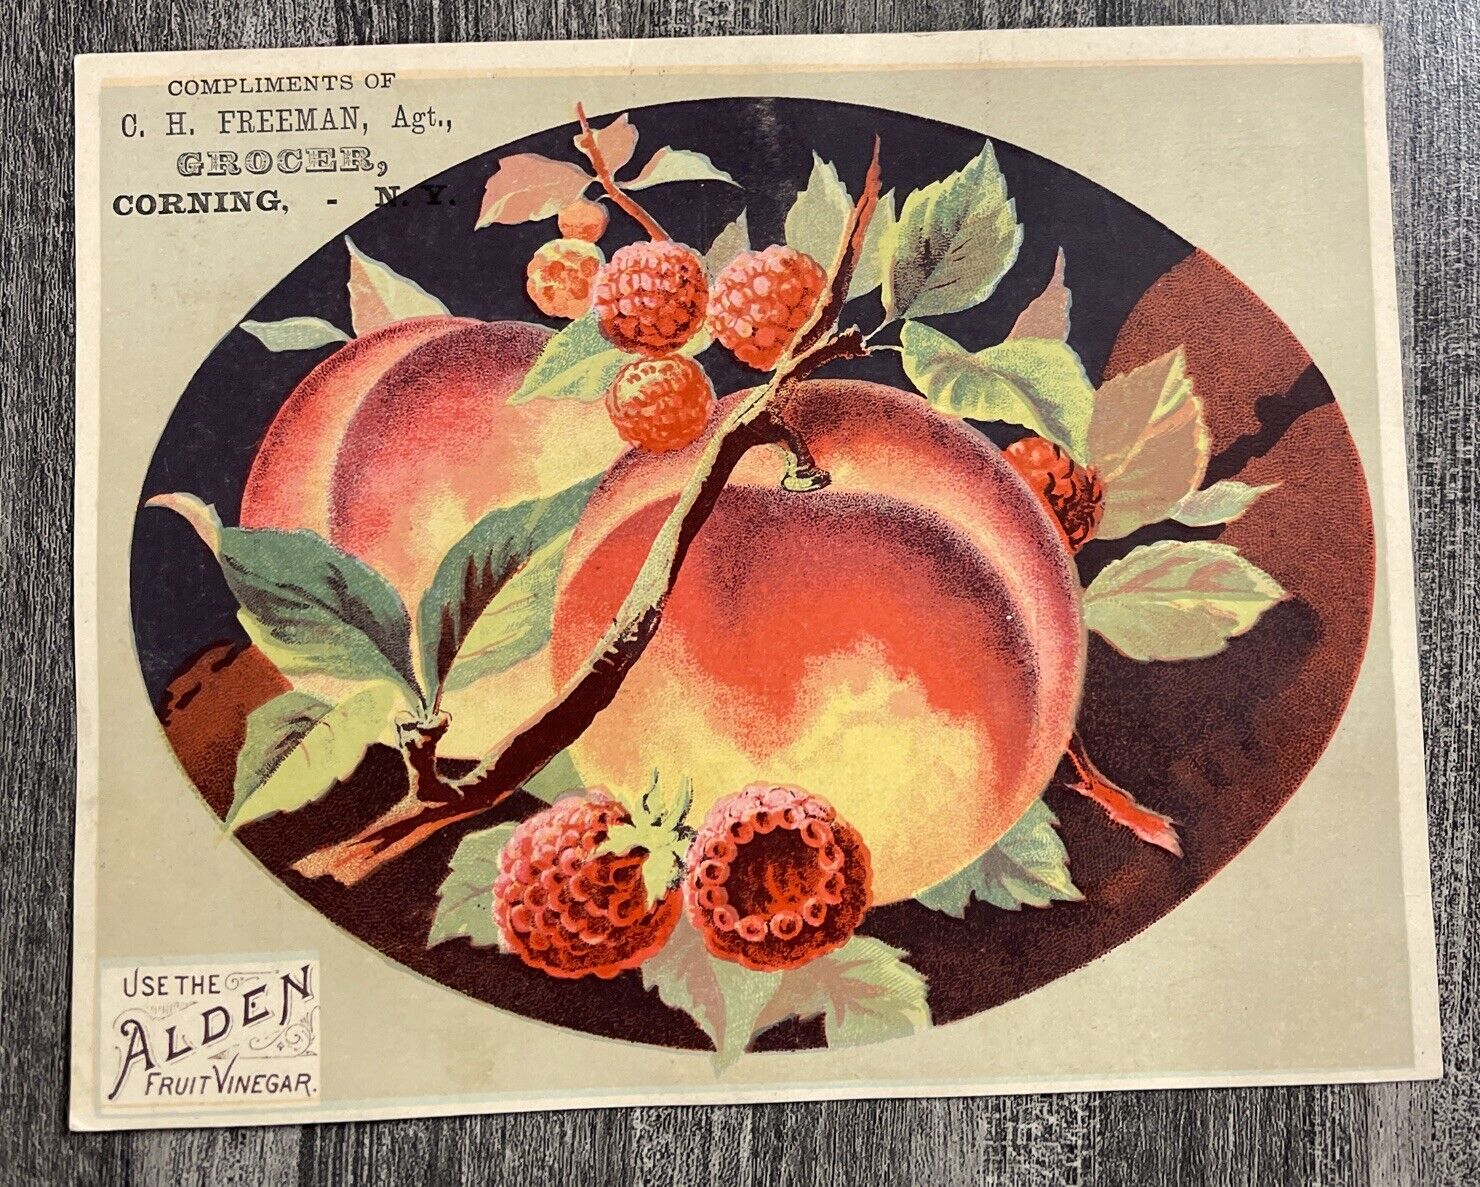 Alden Fruit Vinegar Advertising Trade Card Corning, NY C.H. Freeman